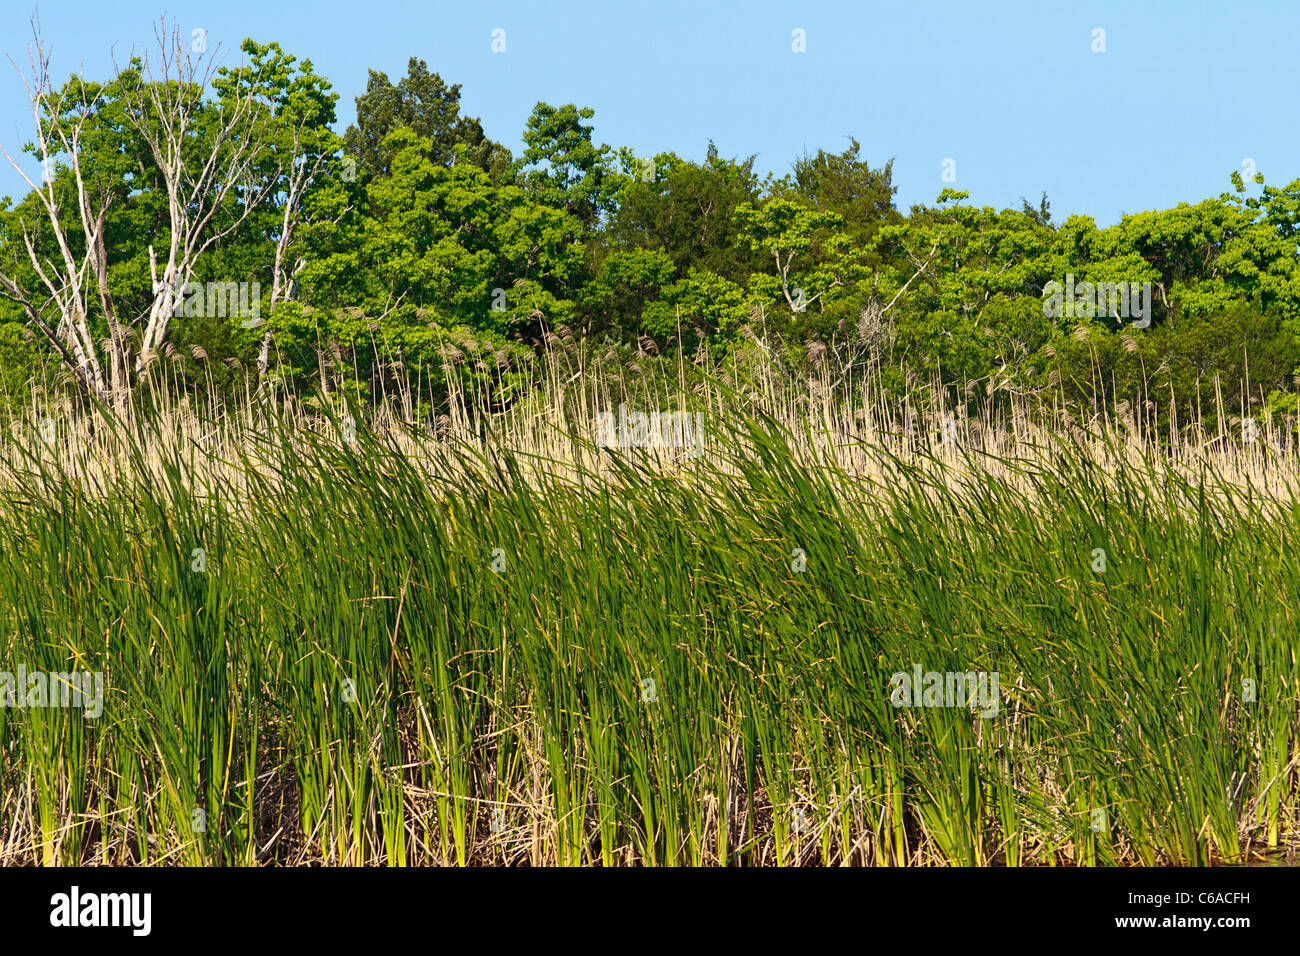 Sehafer und Sawgrass mit harten Holz Bäume entlang der Apalachicola River in der Stadt der Apalachicola entlang der Florida Panhandle. Stockfoto